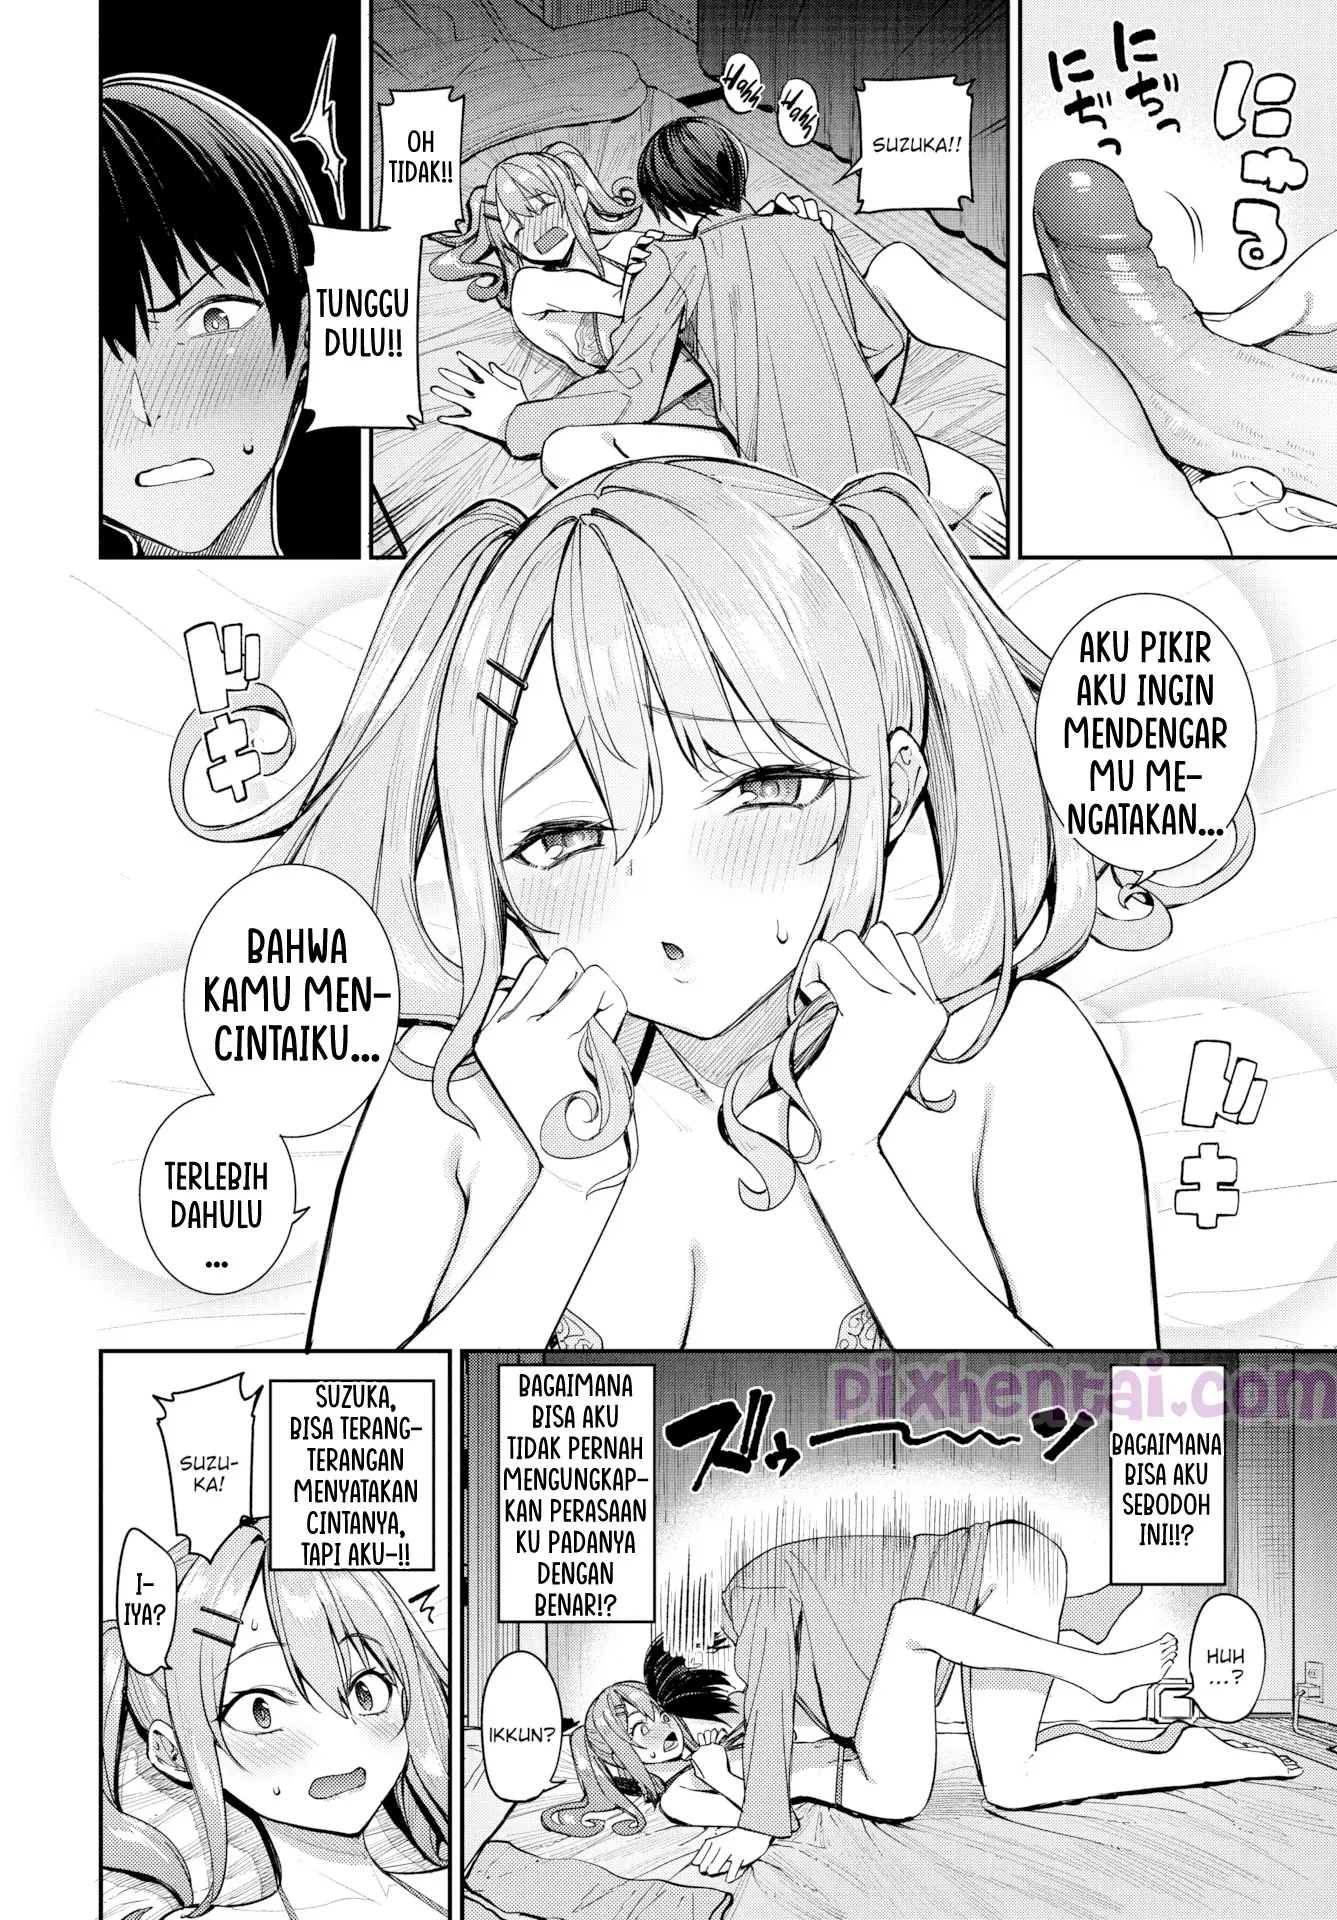 Komik hentai xxx manga sex bokep Moral Crisis Menolak sange kepada pacar yang masih pelajar 12